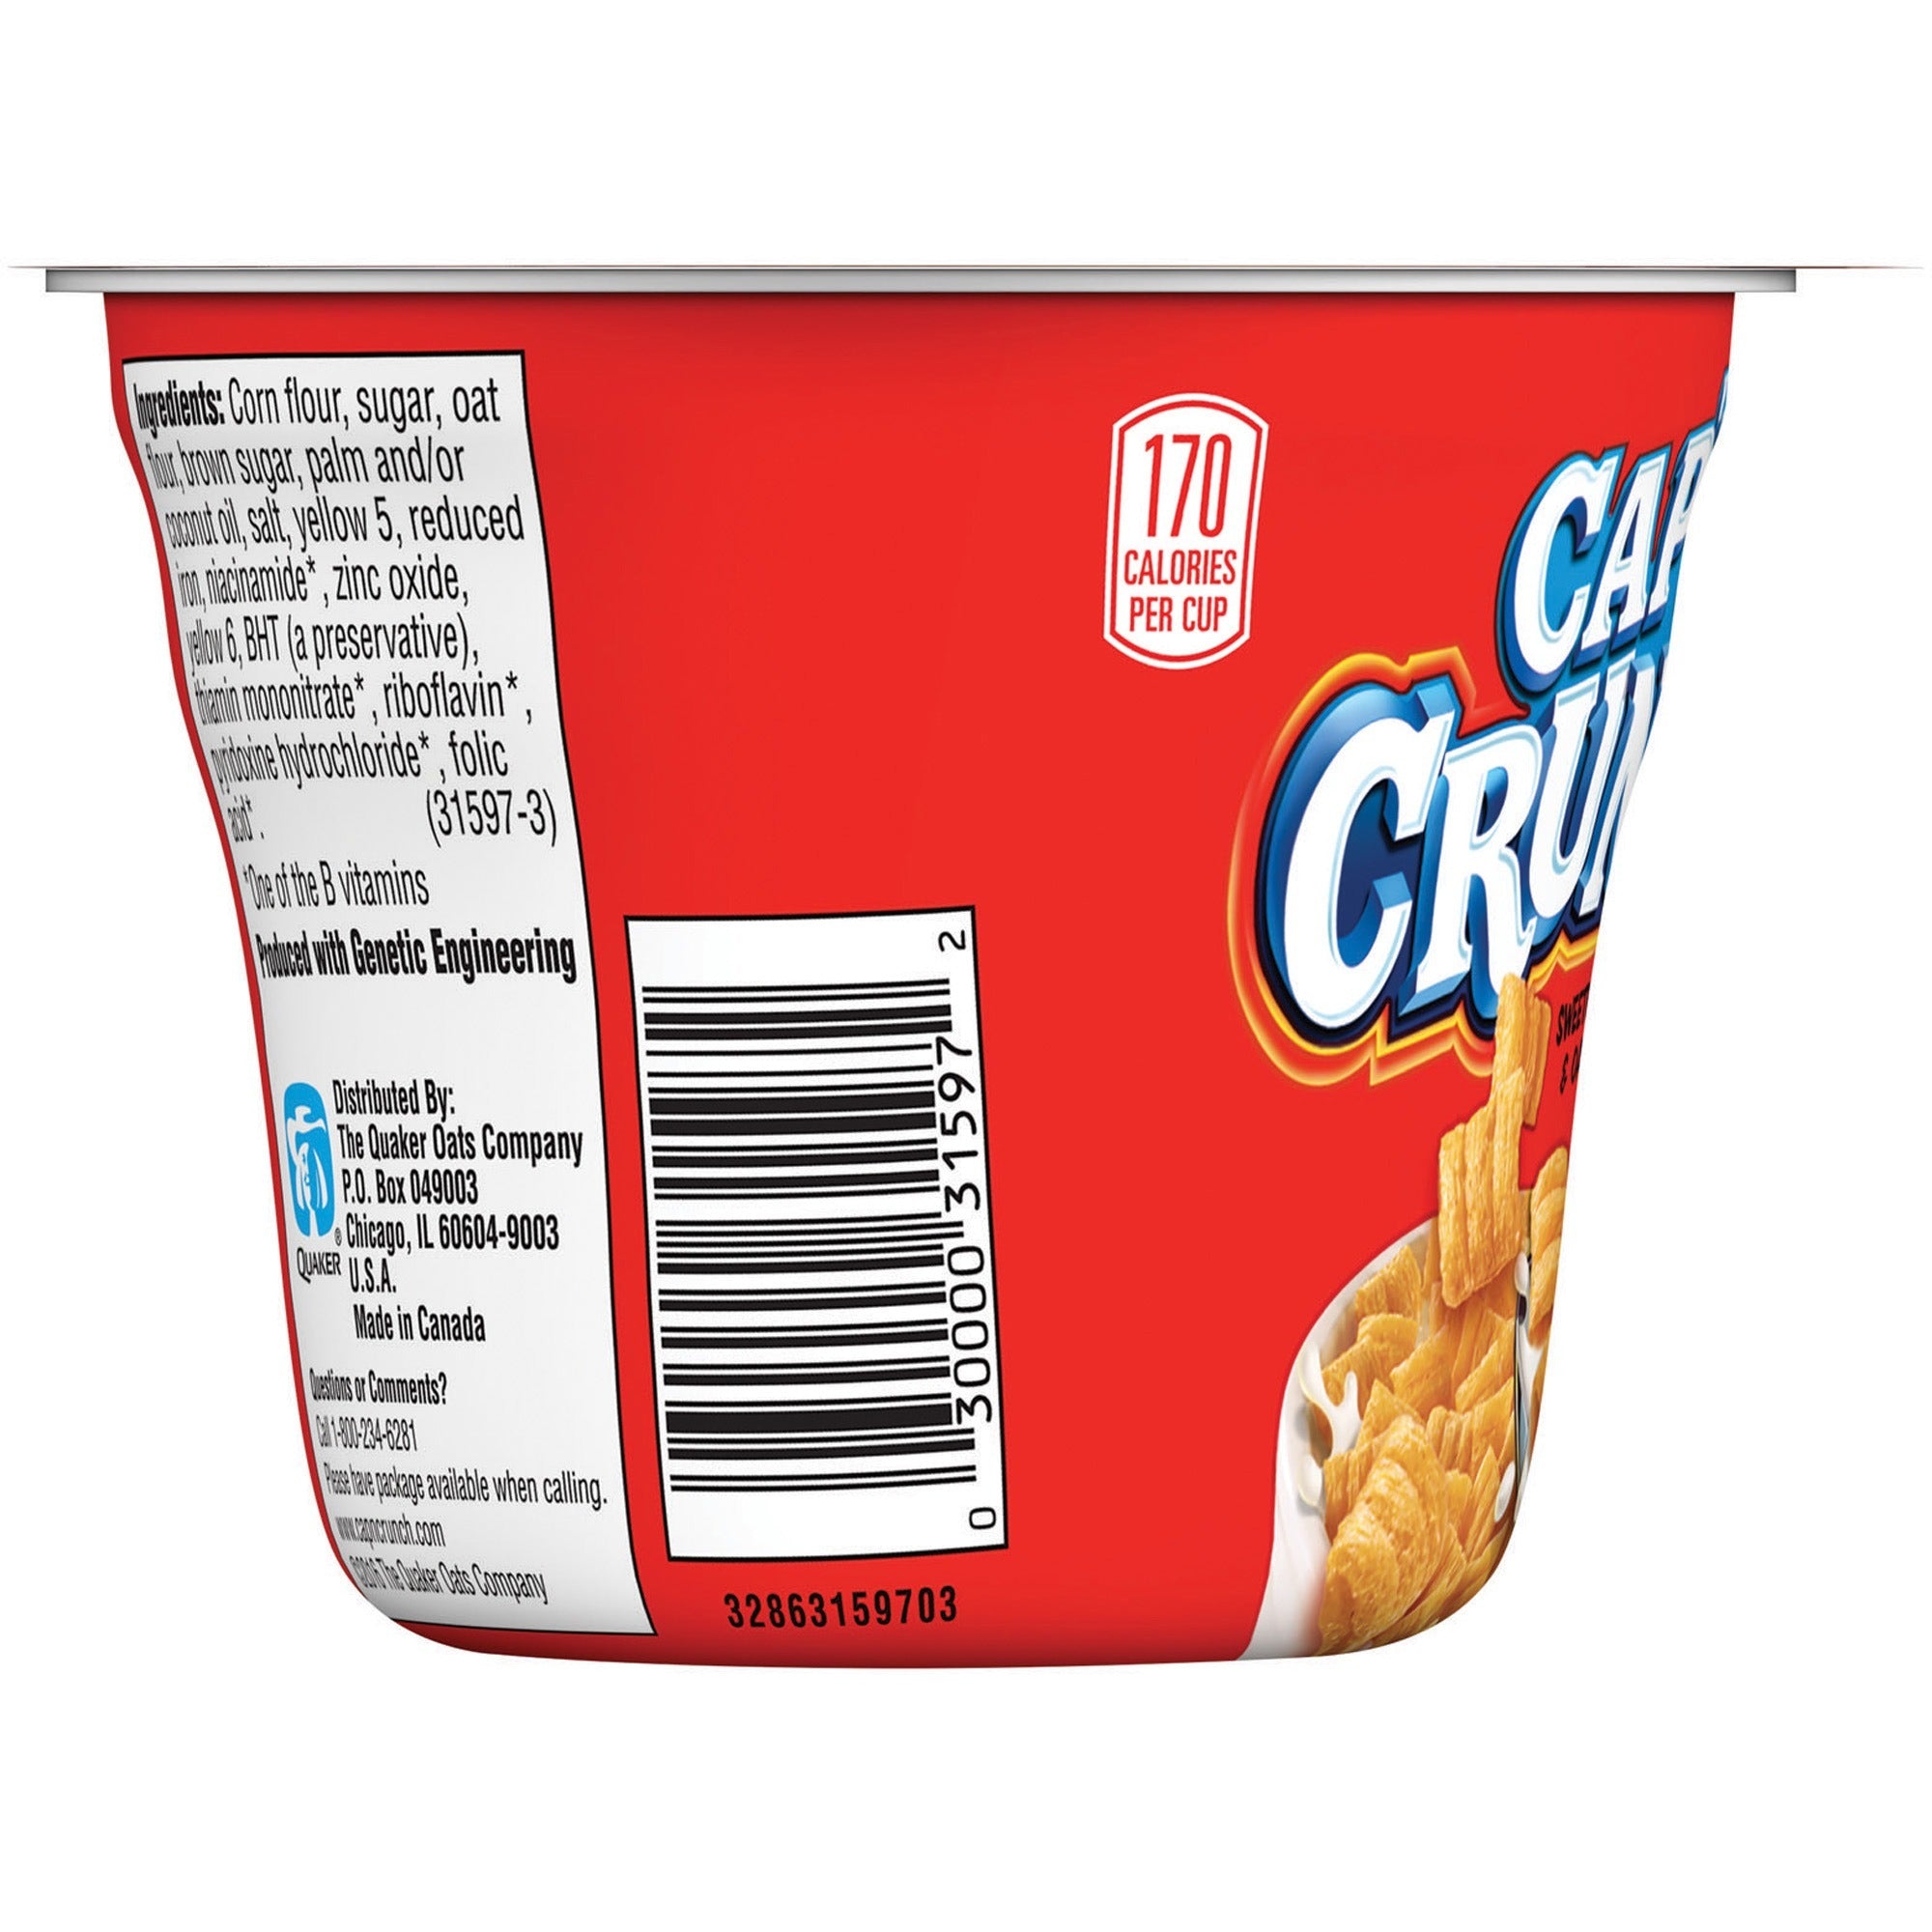 quaker-oats-capn-crunch-corn-oat-cereal-bowl-corn-oat-bowl-151-oz-12-carton_qkr31597 - 4